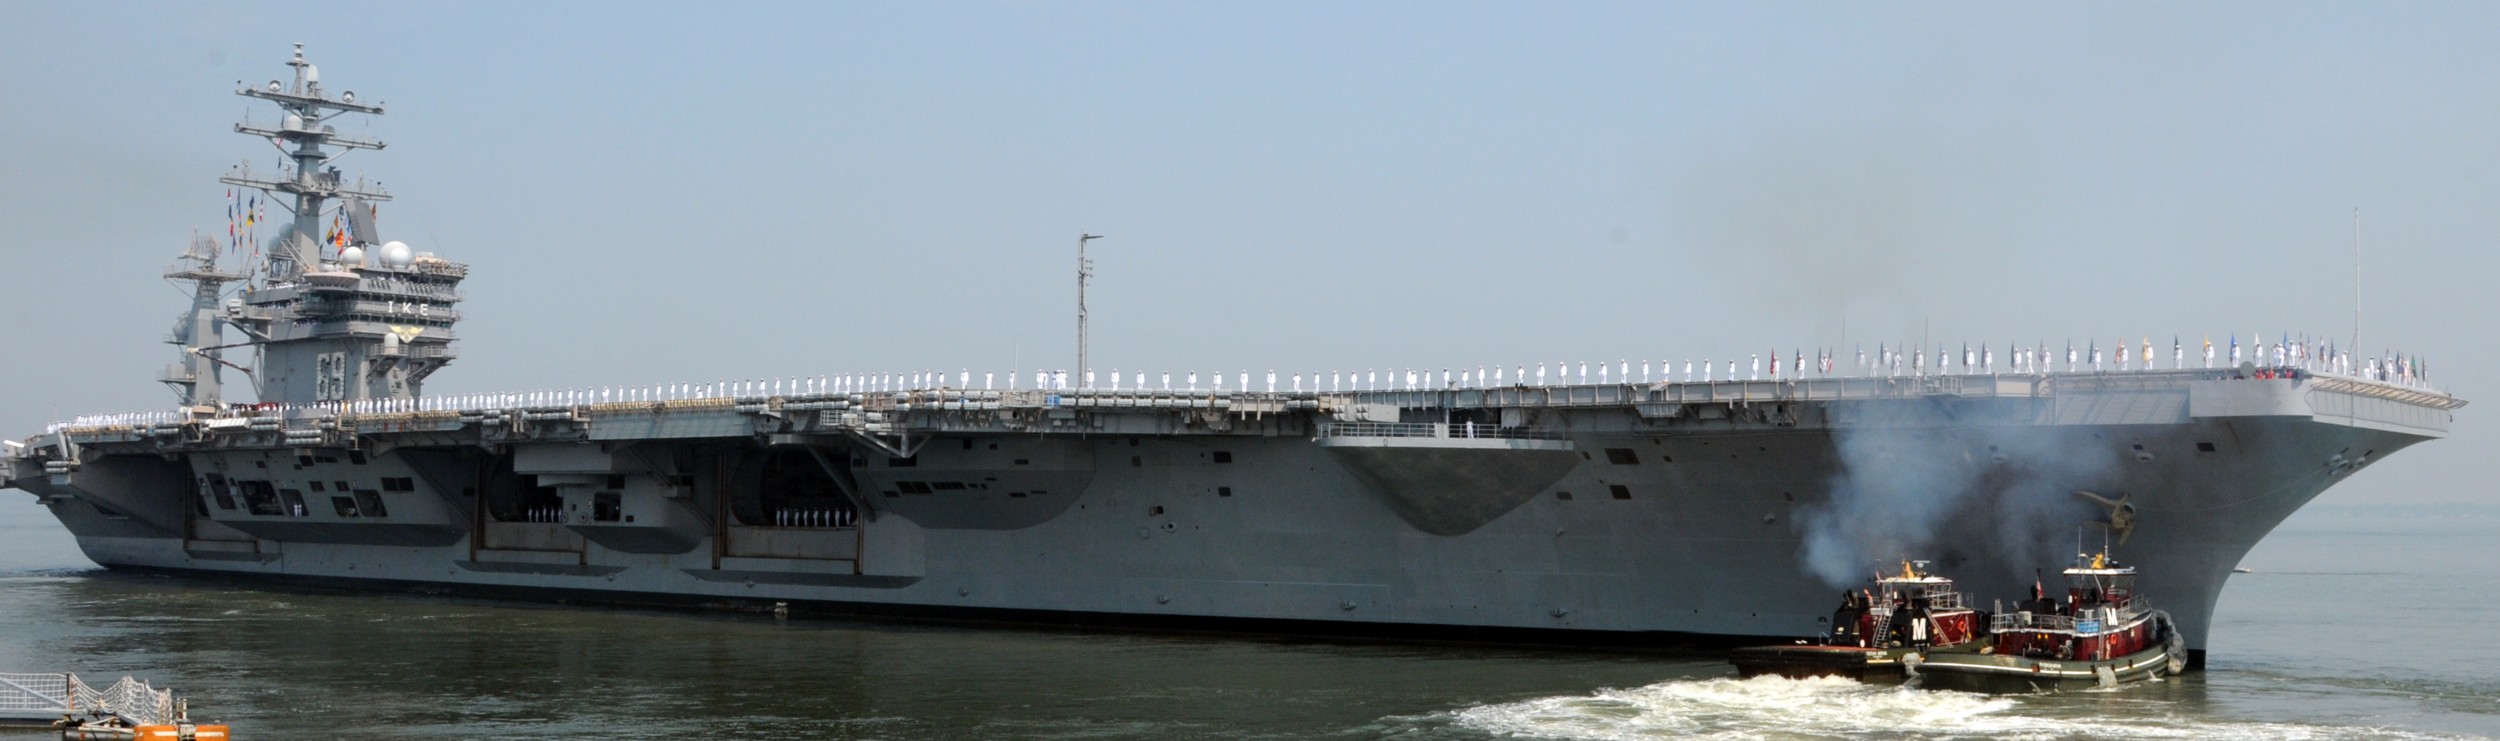 uss dwight d. eisenhower cvn-69 aircraft carrier 2012 131 norfolk naval station virginia